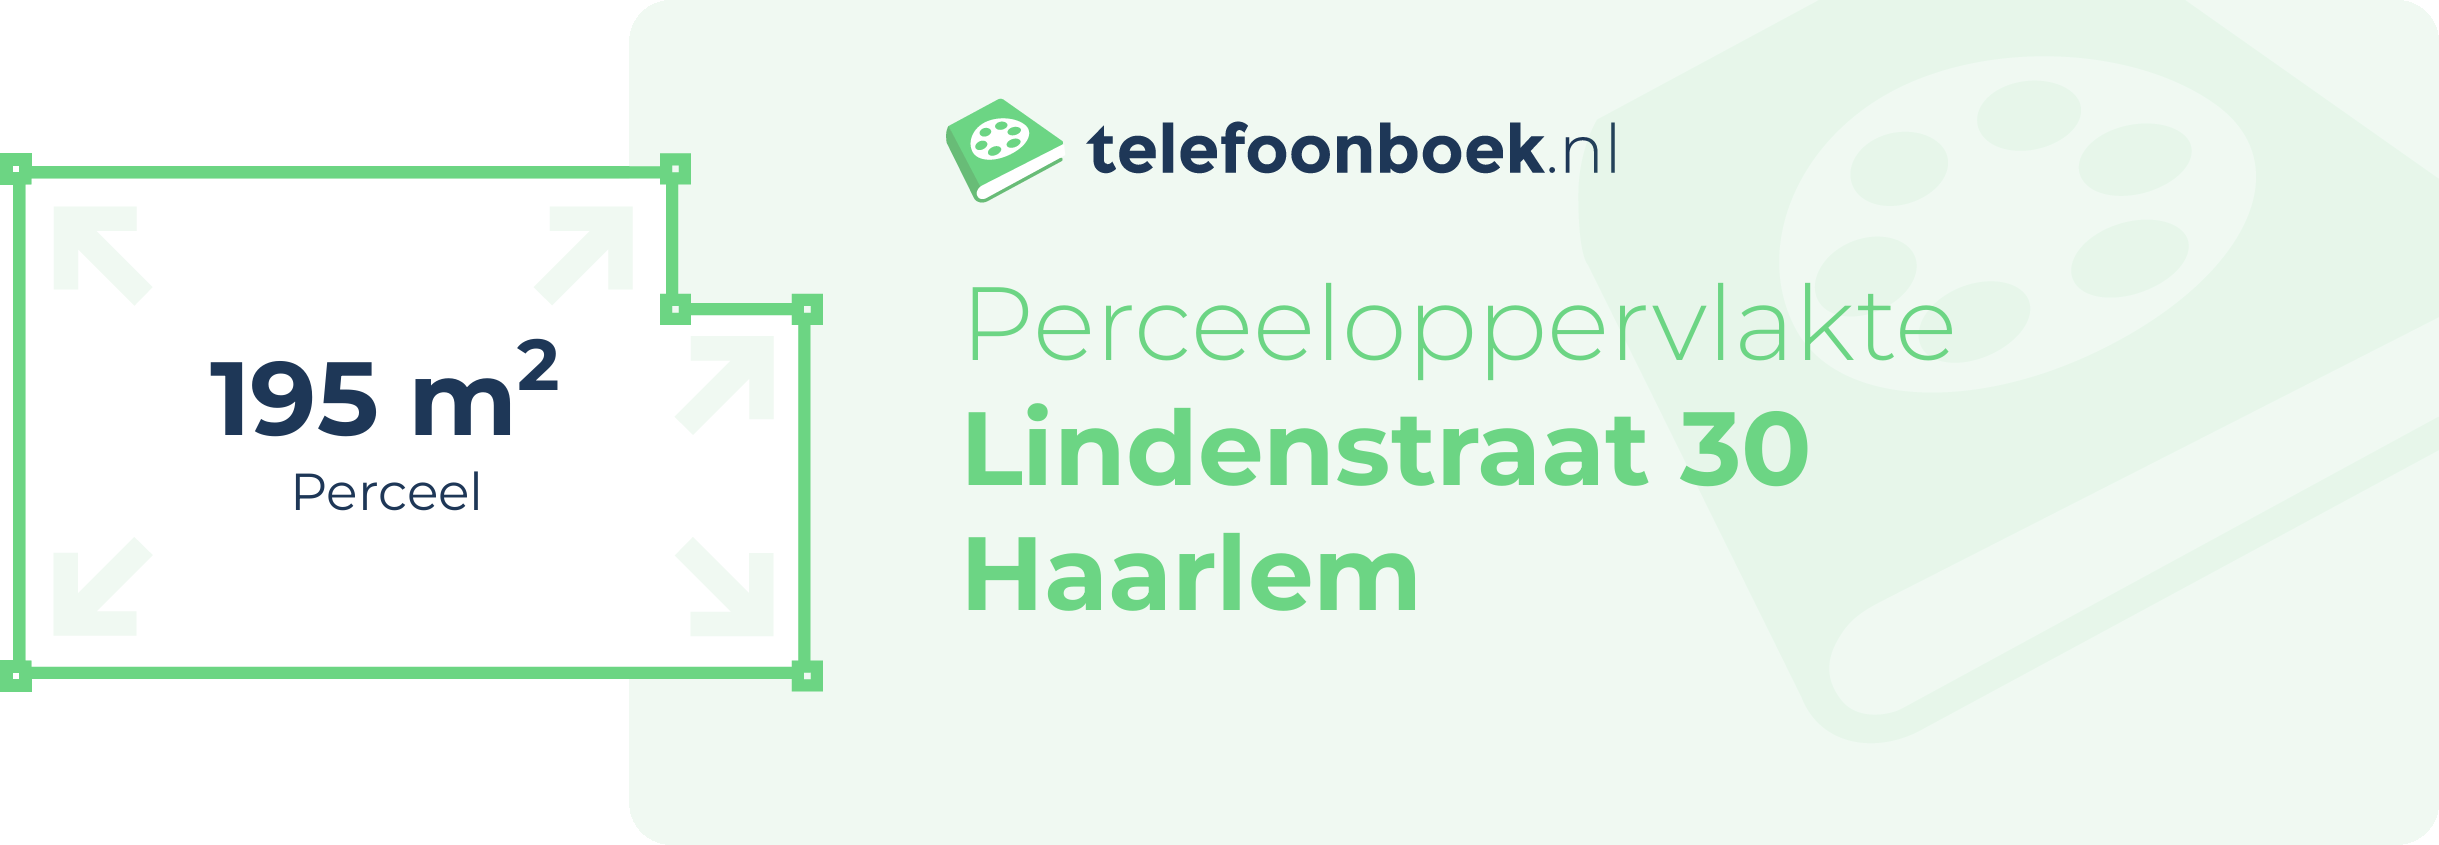 Perceeloppervlakte Lindenstraat 30 Haarlem